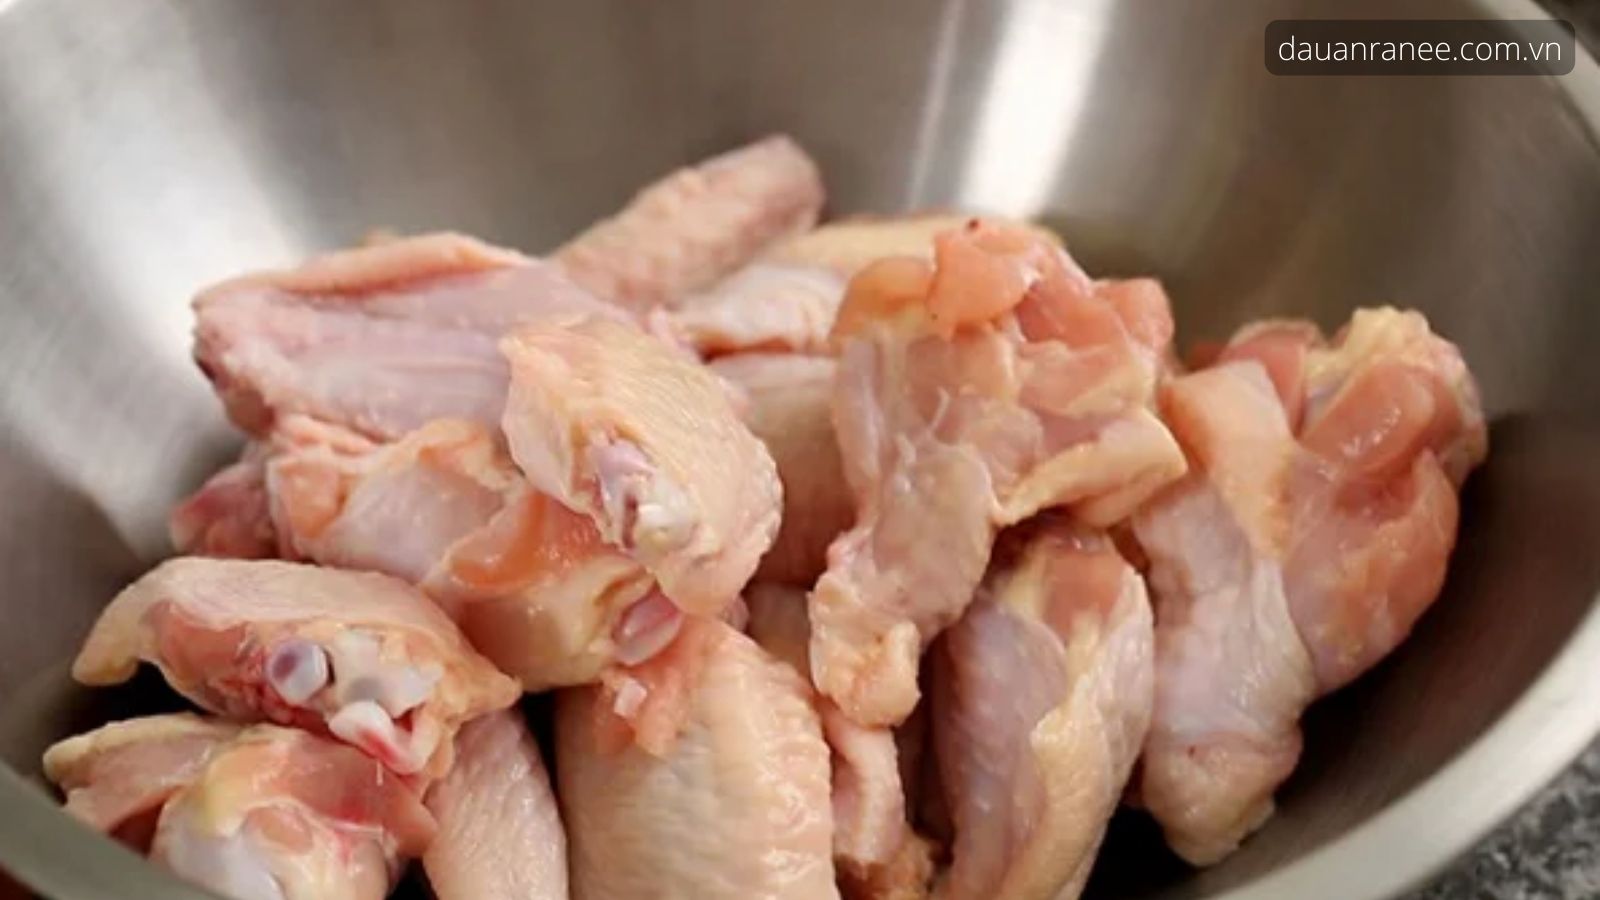 Hướng dẫn cách làm món cánh gà chiên nước mắm truyền thống